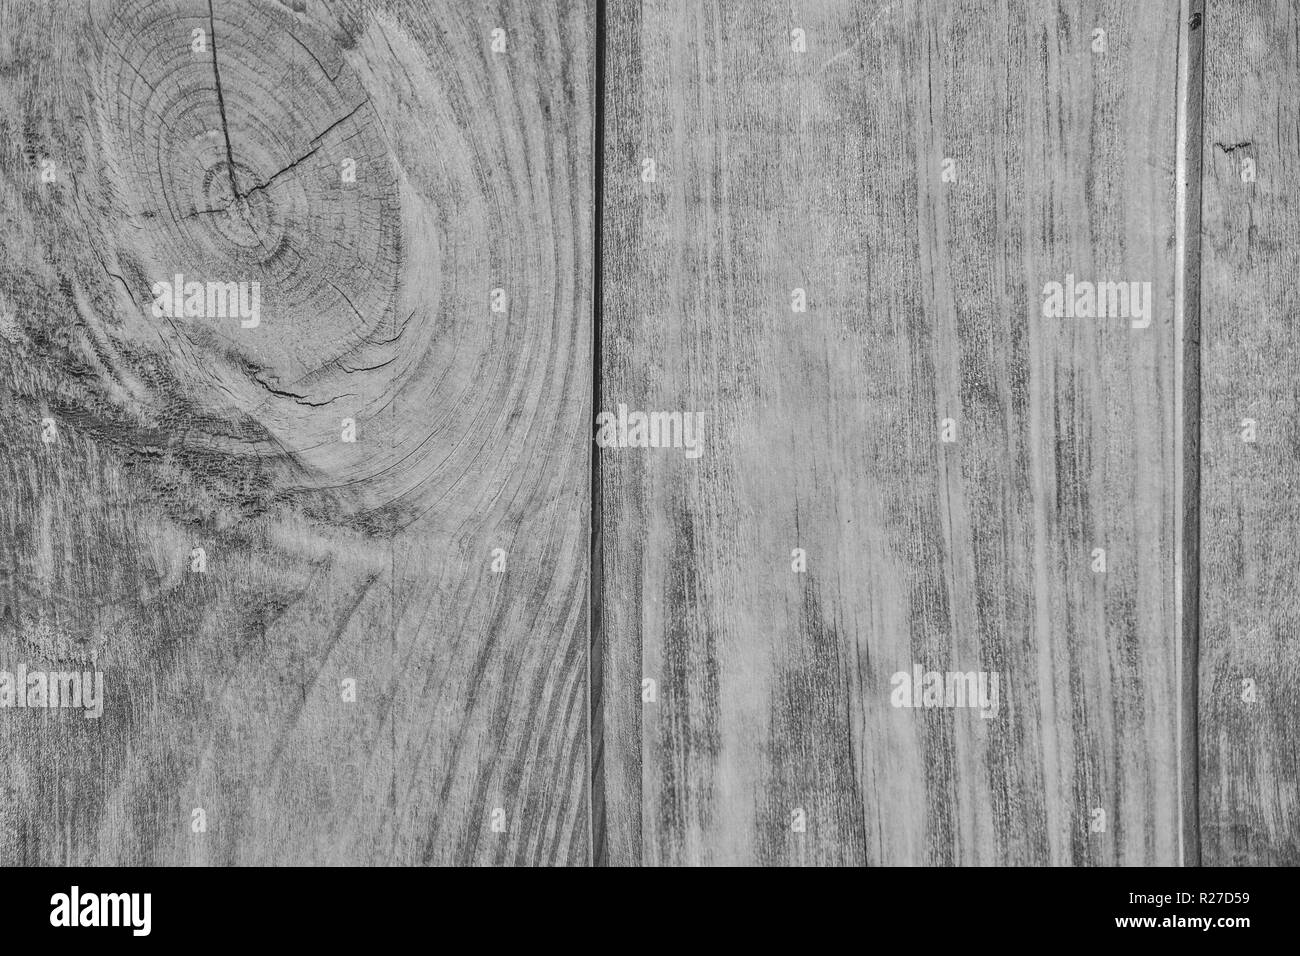 Vintage White Holz- Textur von Planken mit Knoten - natürliche Muster von Nadelholz Holz. Grunge Holz Hintergrund schließen sich für Design im Landhausstil Stockfoto